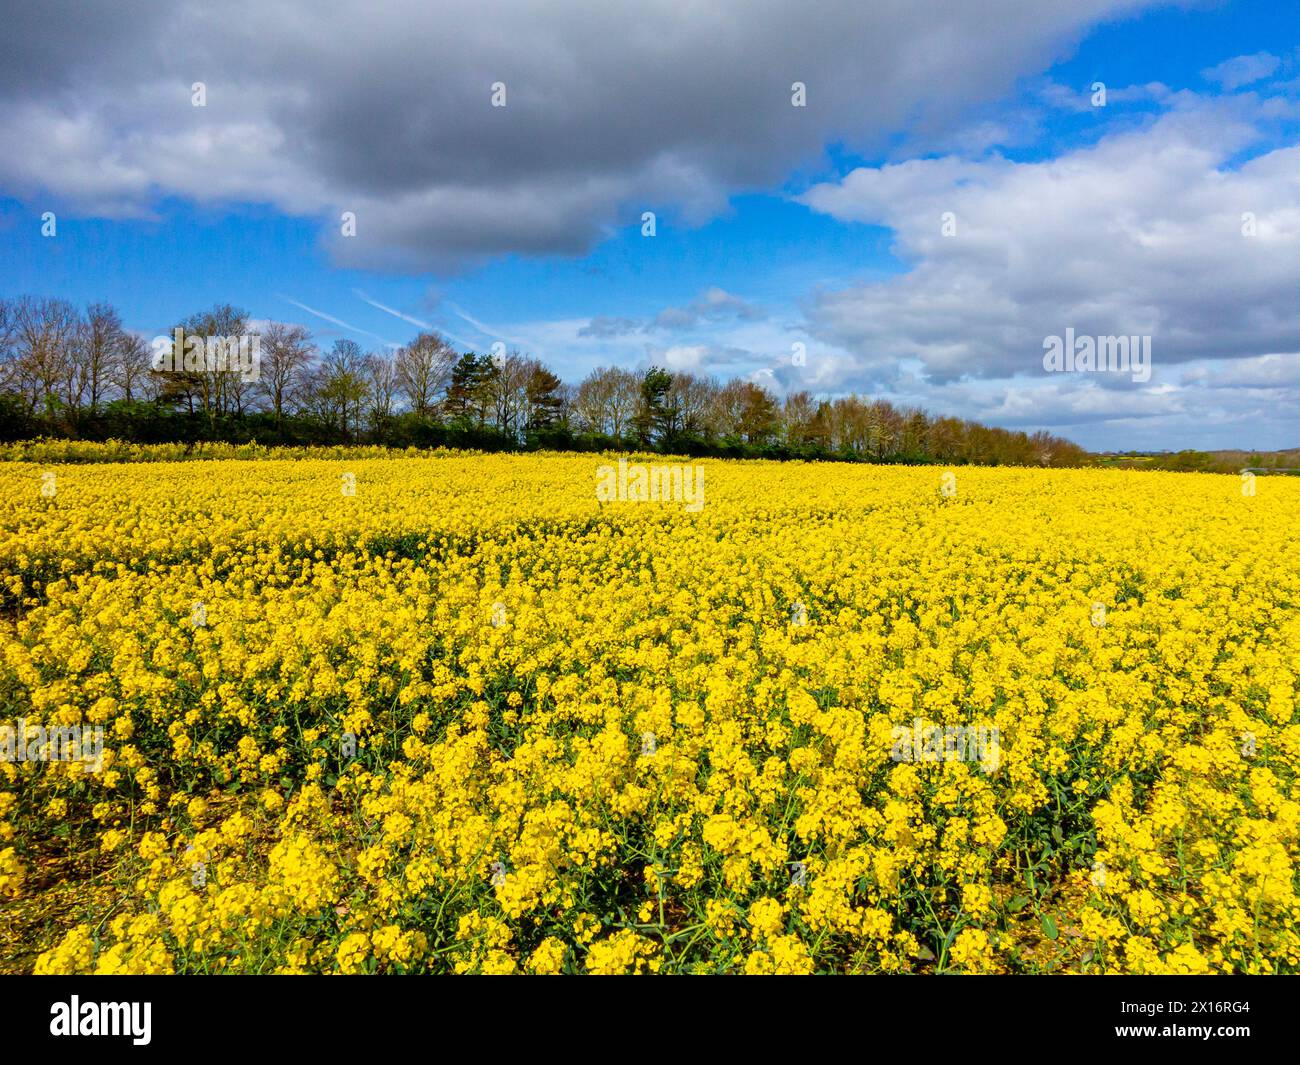 Ölraps wächst im Frühjahr auf einem Feld in der Nähe von Frodesley in Shropshire England Großbritannien mit Bäumen im Hintergrund, blauem Himmel und weißen Wolken darüber. Stockfoto